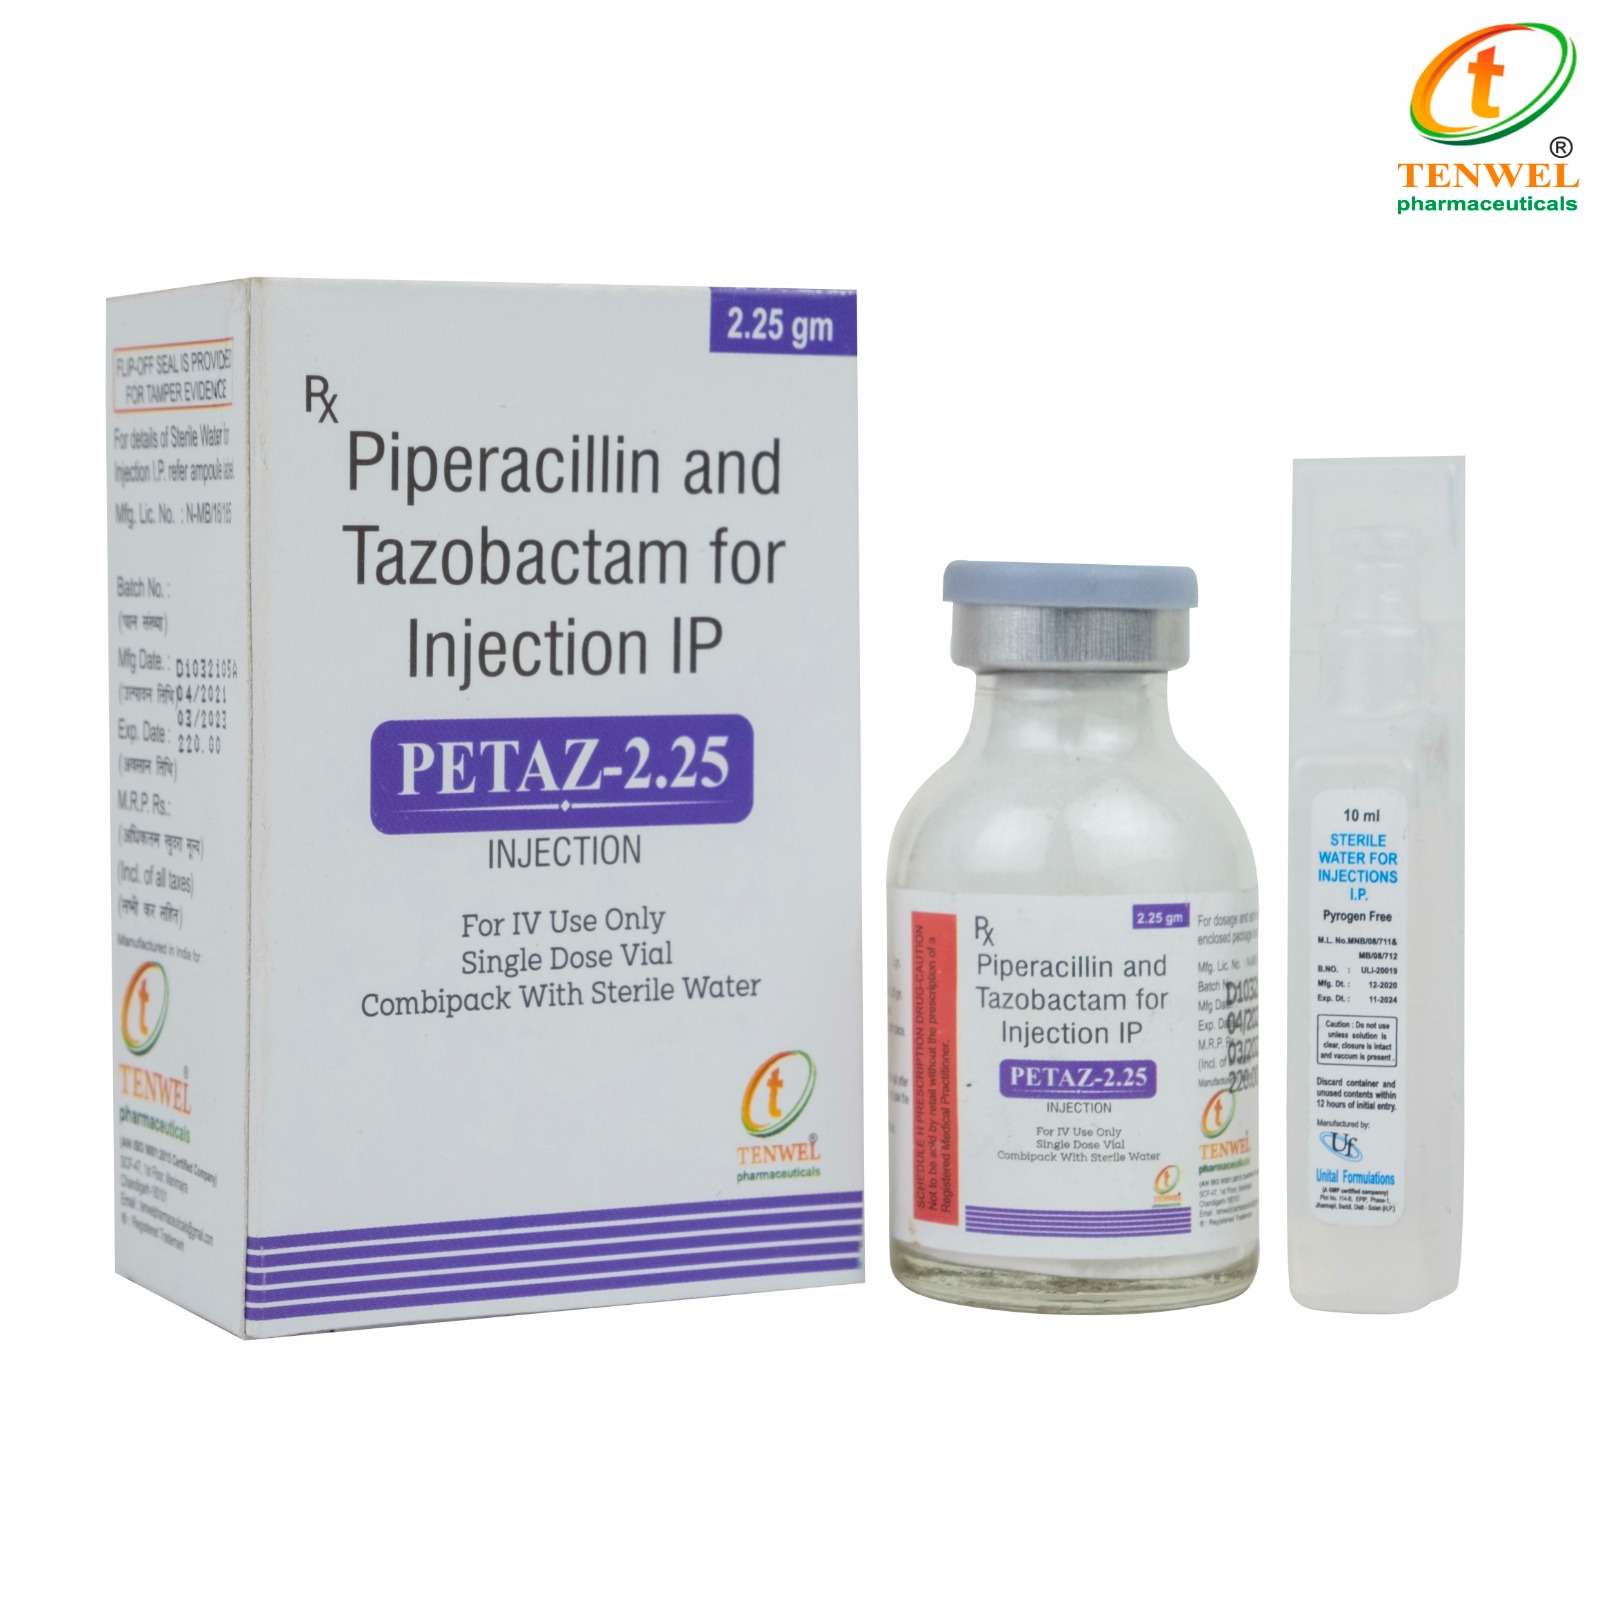 piperacillin + tazobactum 2.25gminjection